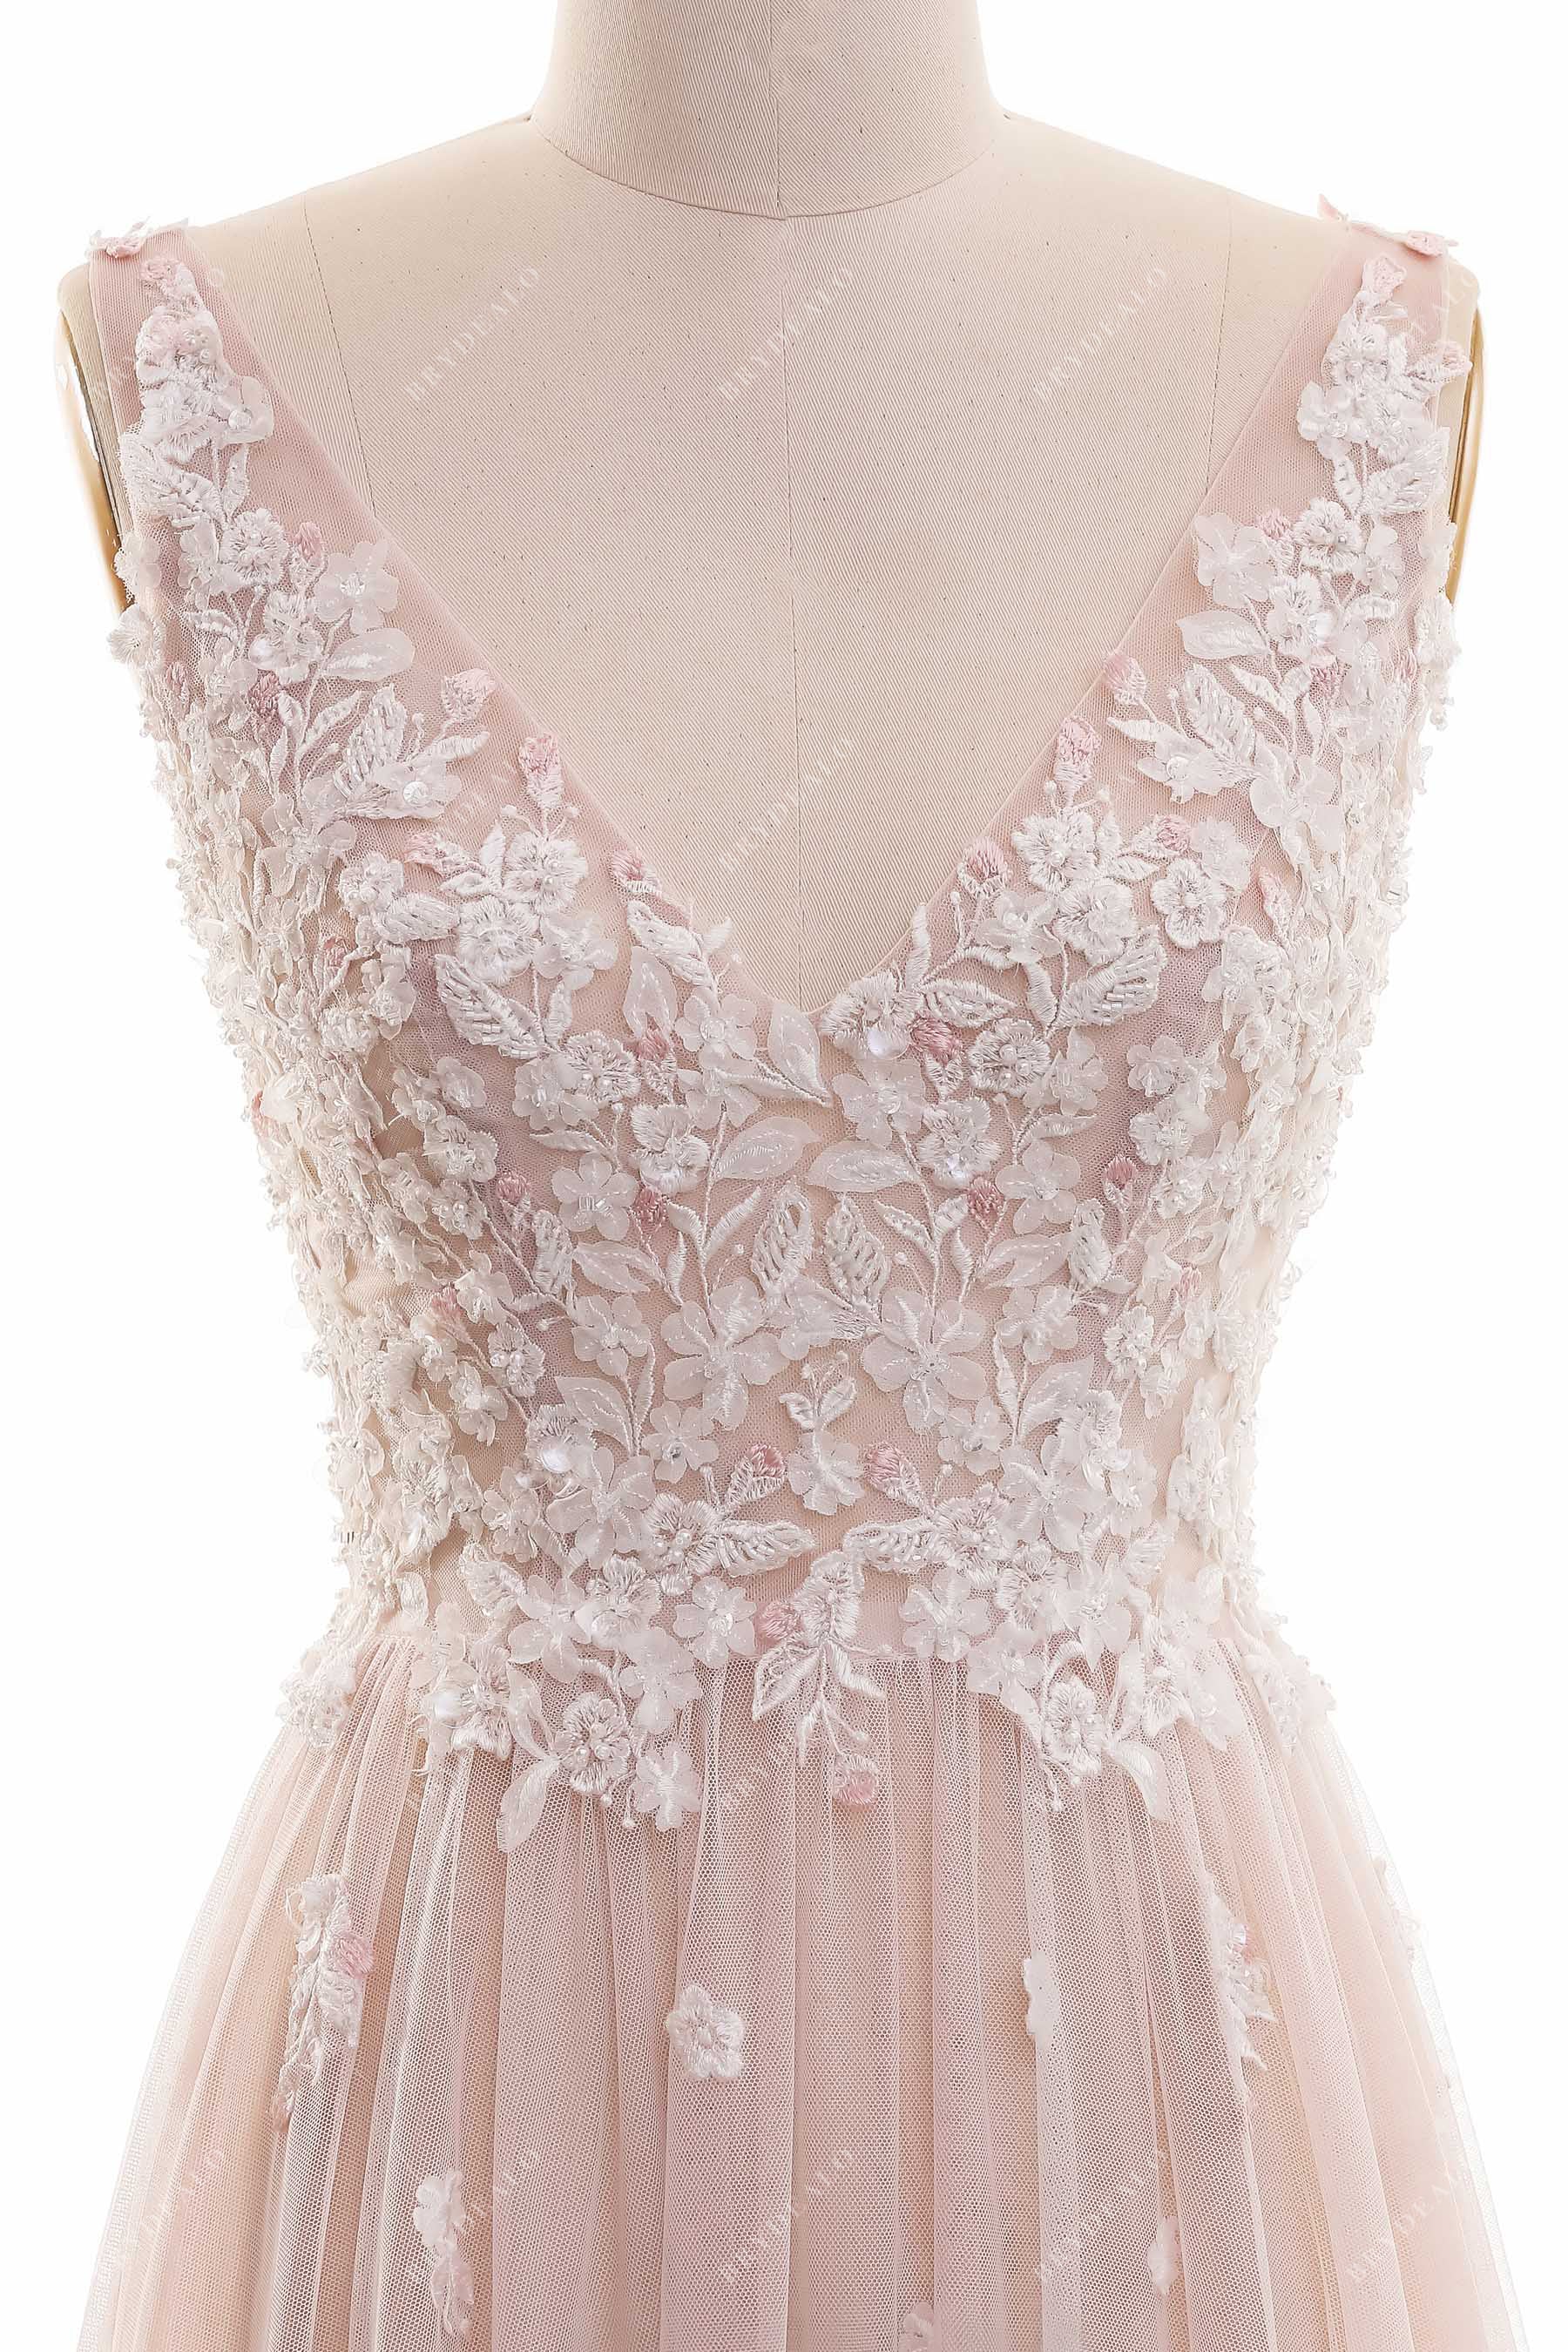 Boho V-neck Beaded Lace Dusty Rose Summer Wedding Dress